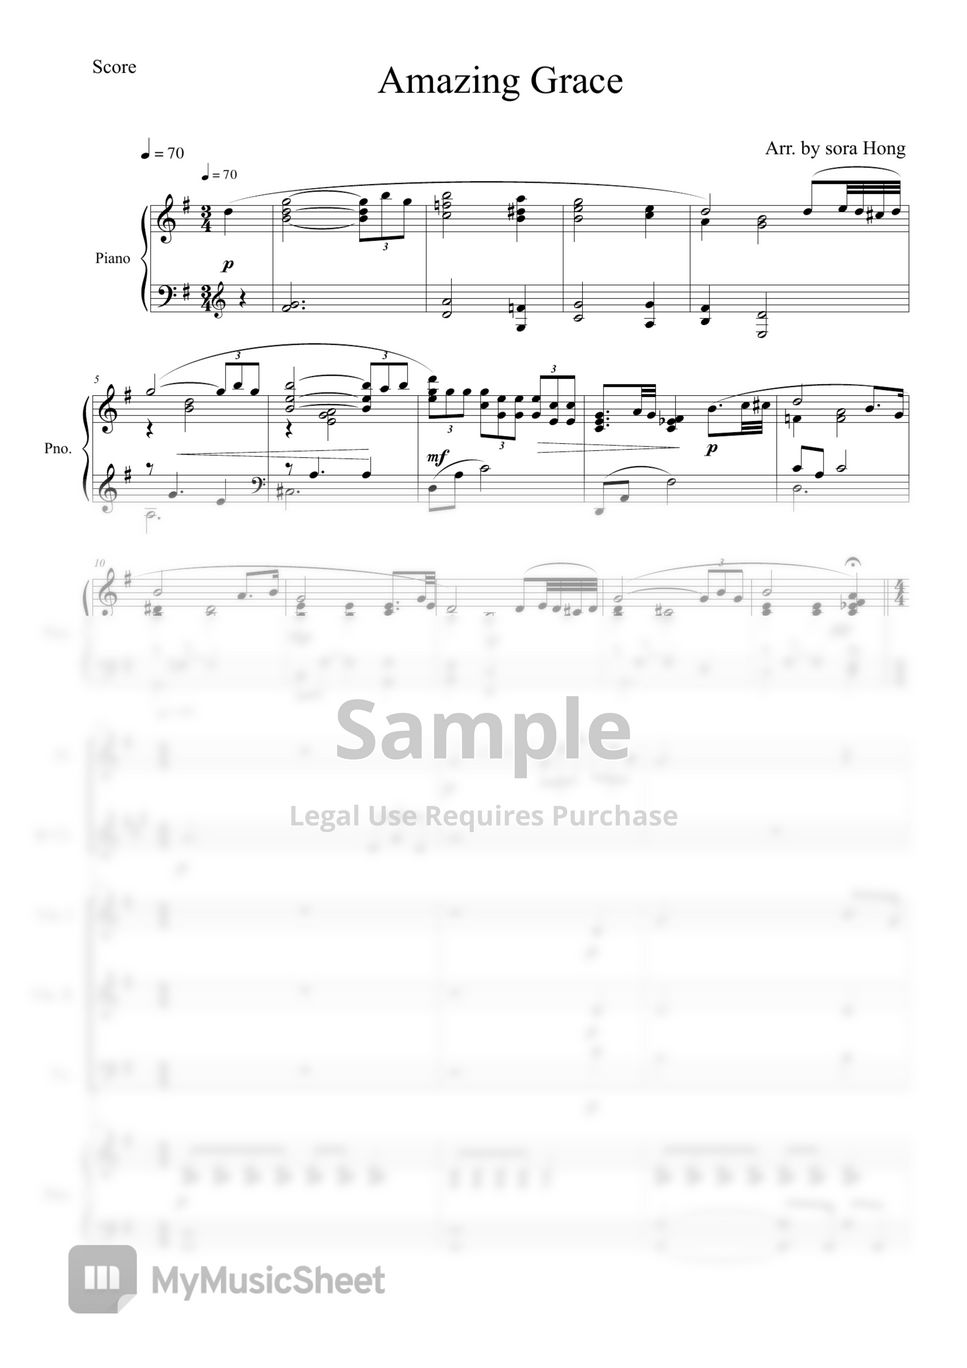 John Newton - Amazing Grace for Ensemble(Fl.Cl.vn1,2,vc,pno) by sorahong